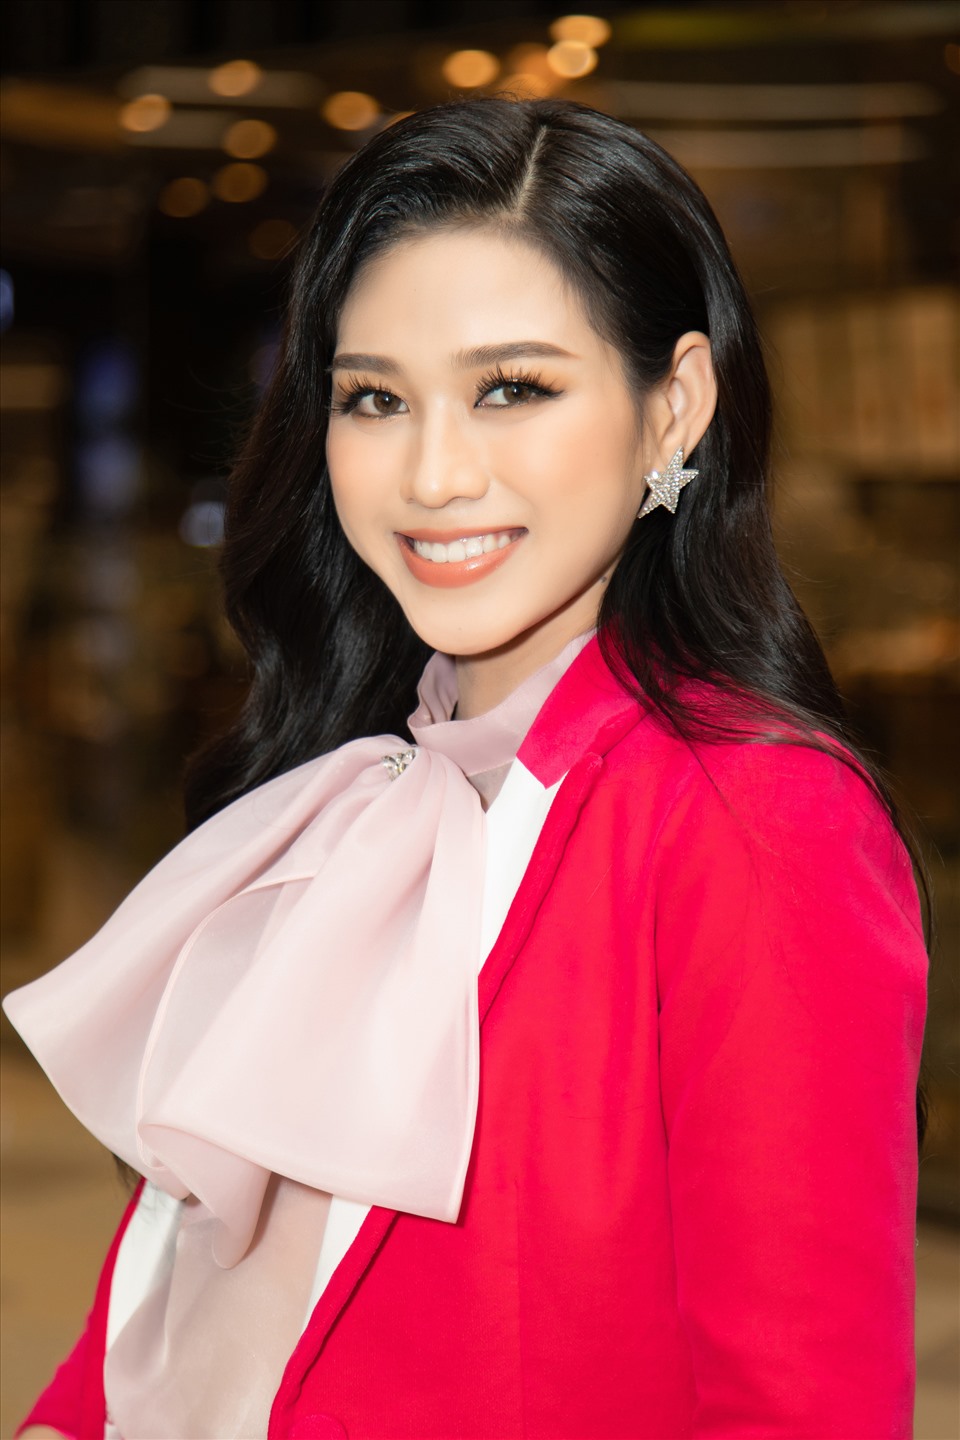 Hoa hậu Đỗ Hà xuất hiện trong sắc hồng với phong cách menswear vừa thanh lịch trang nhã nhưng cũng không kém phần nổi bật.